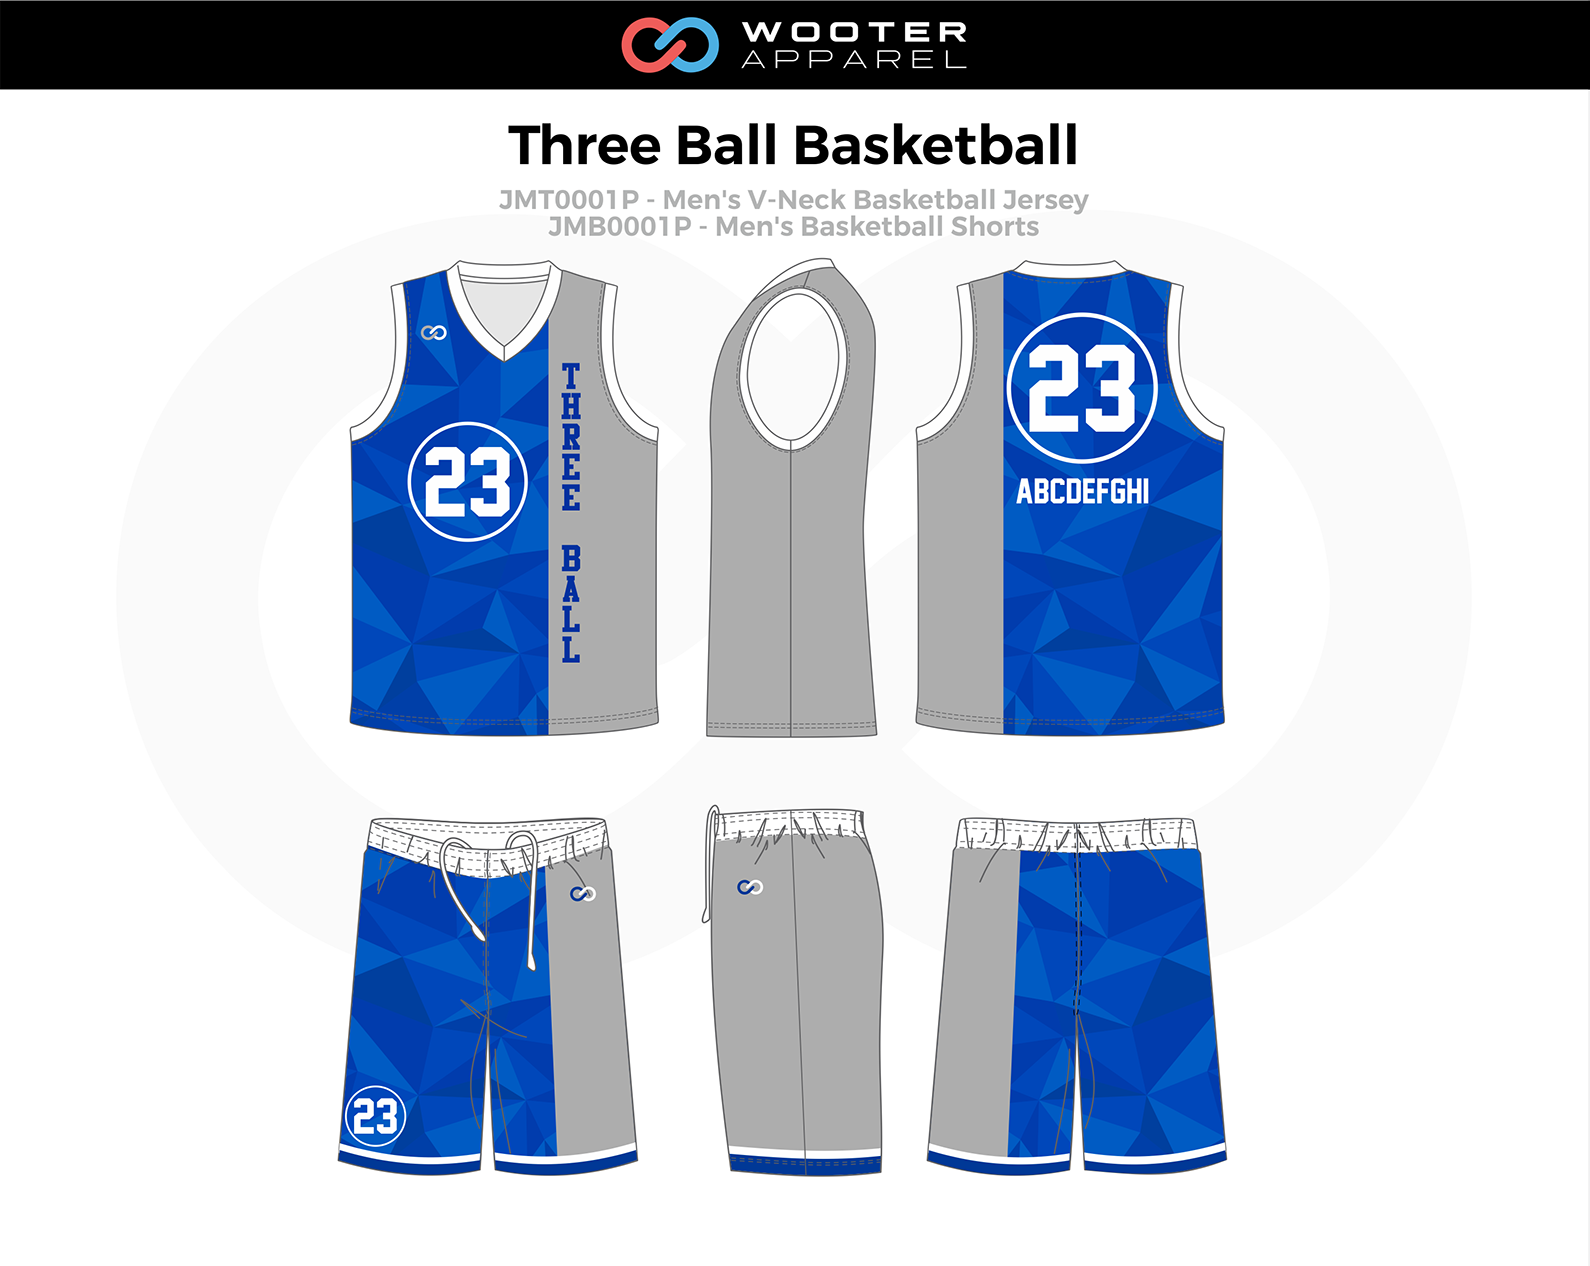 Basketball Uniform Designs — Wooter Apparel